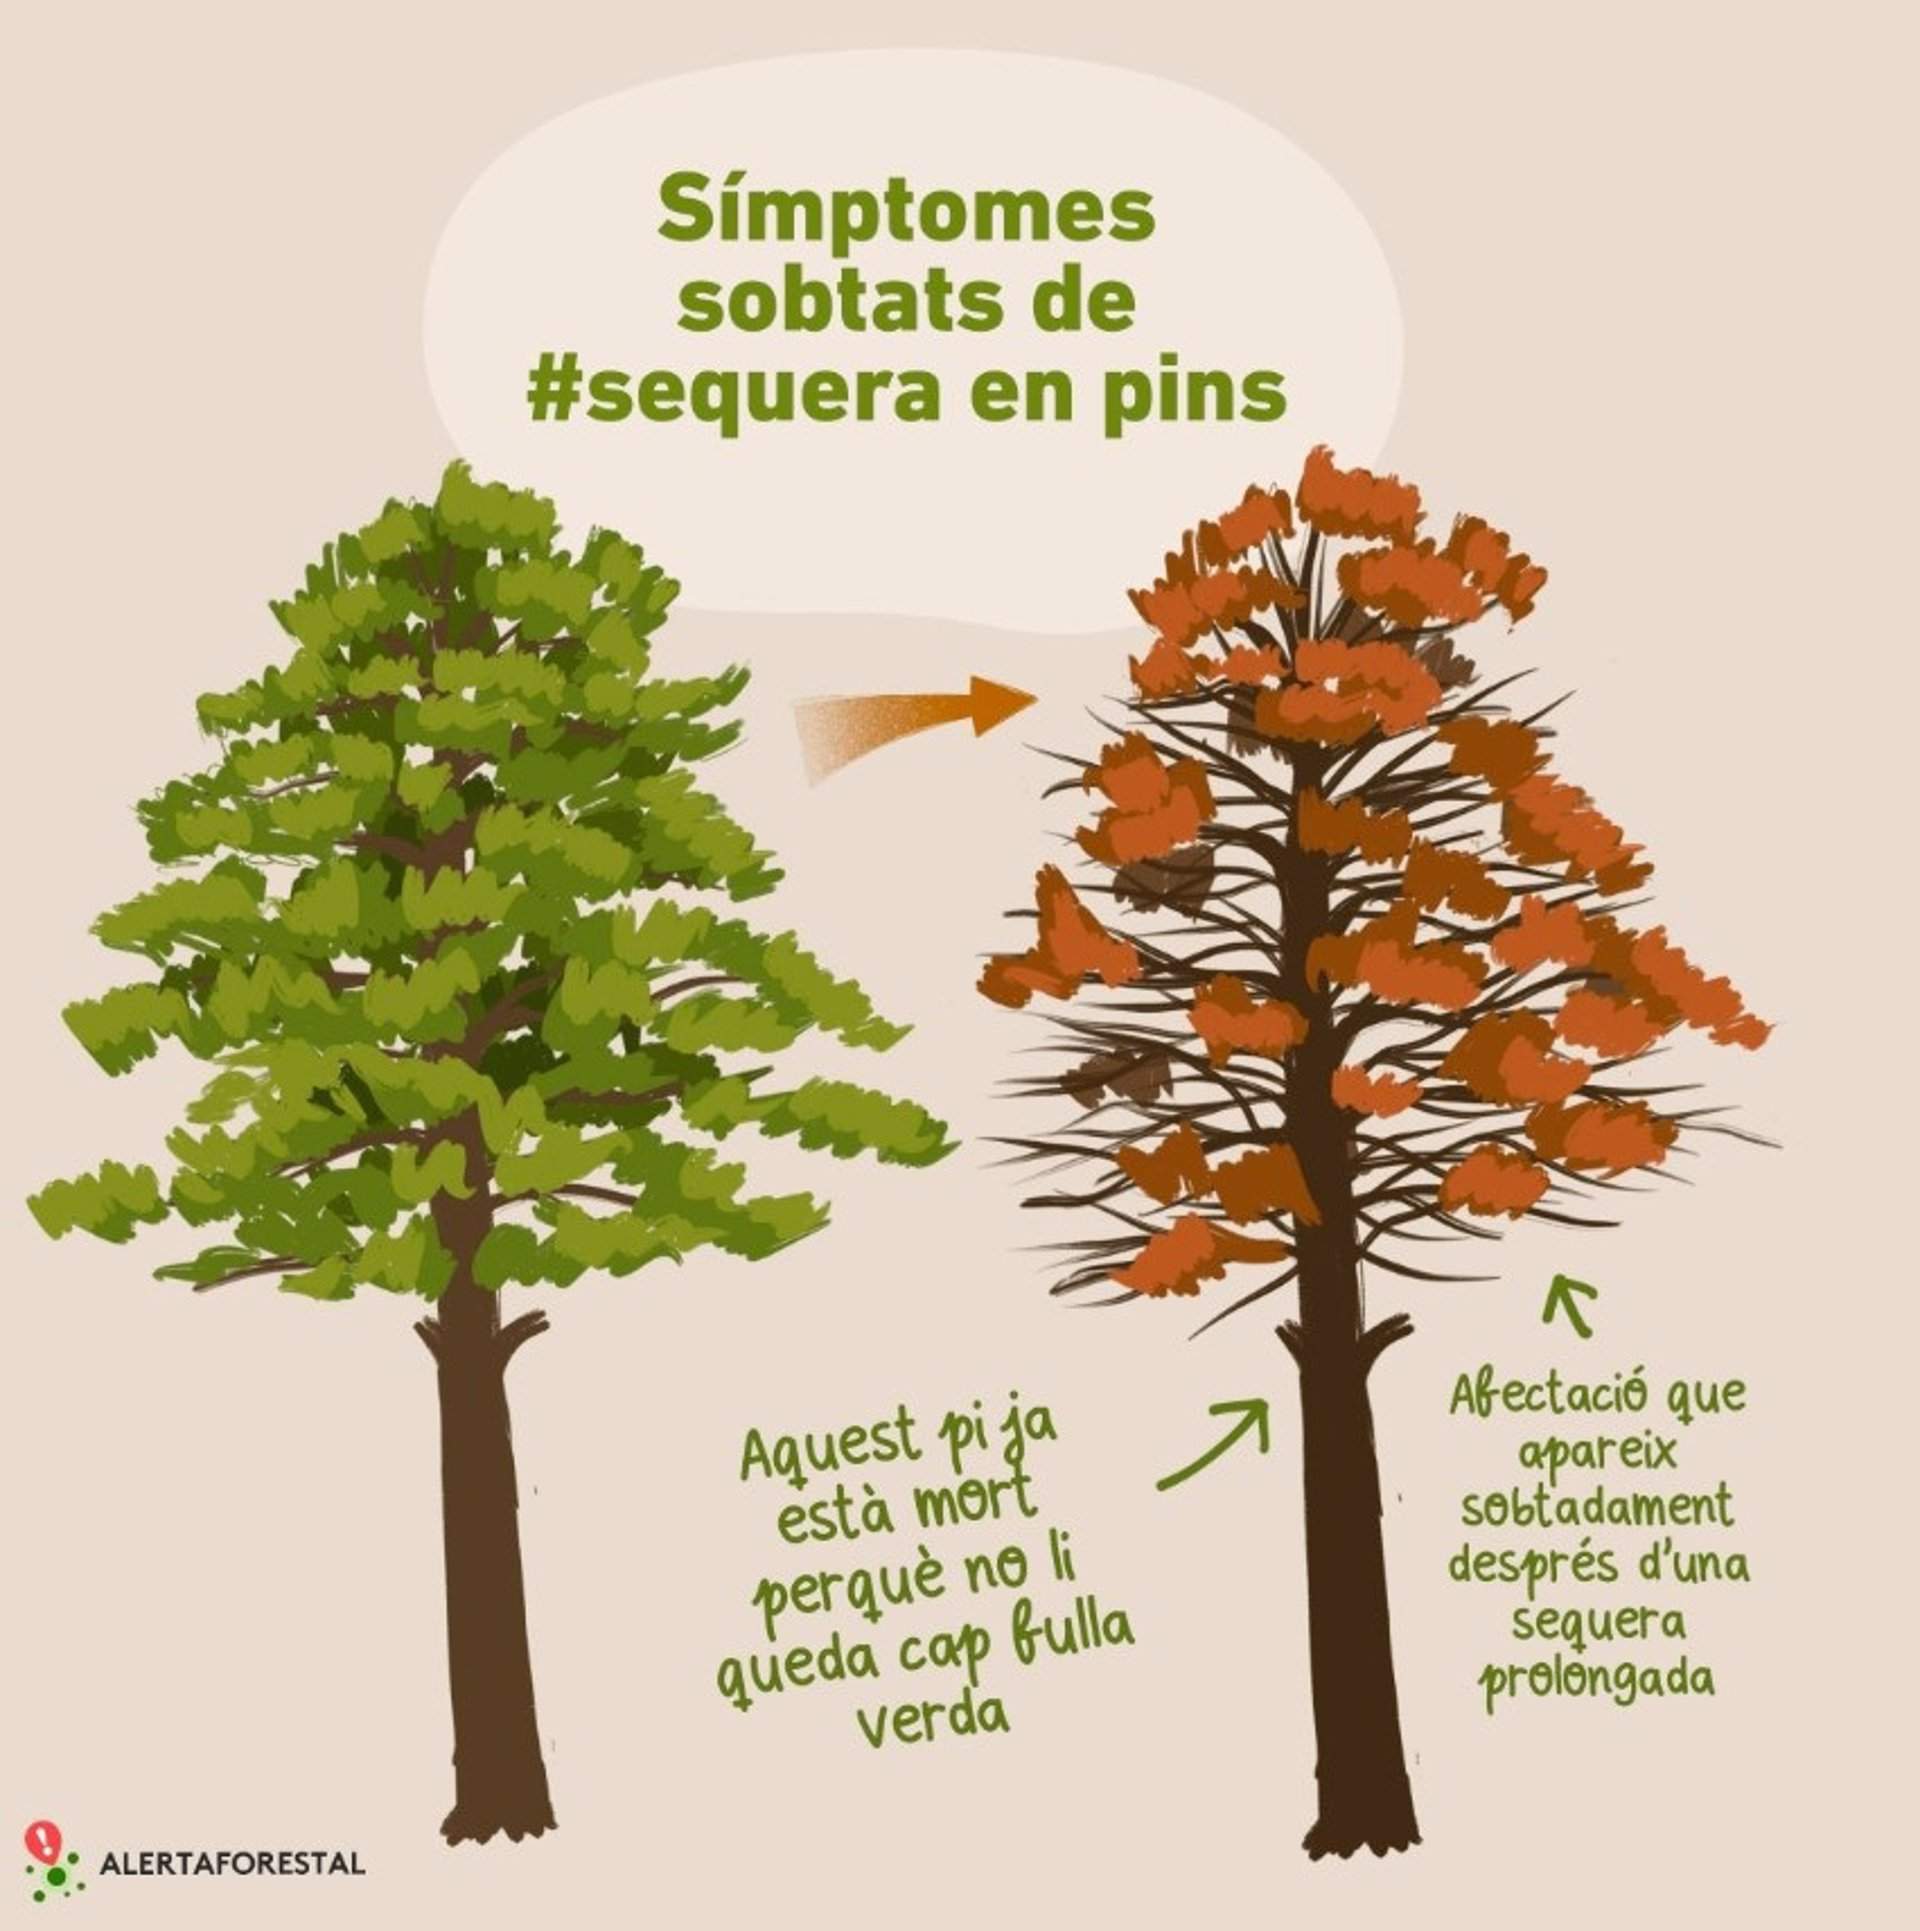 Alerta Forestal avisa de síntomas repentinos de sequía en pinos de Catalunya 